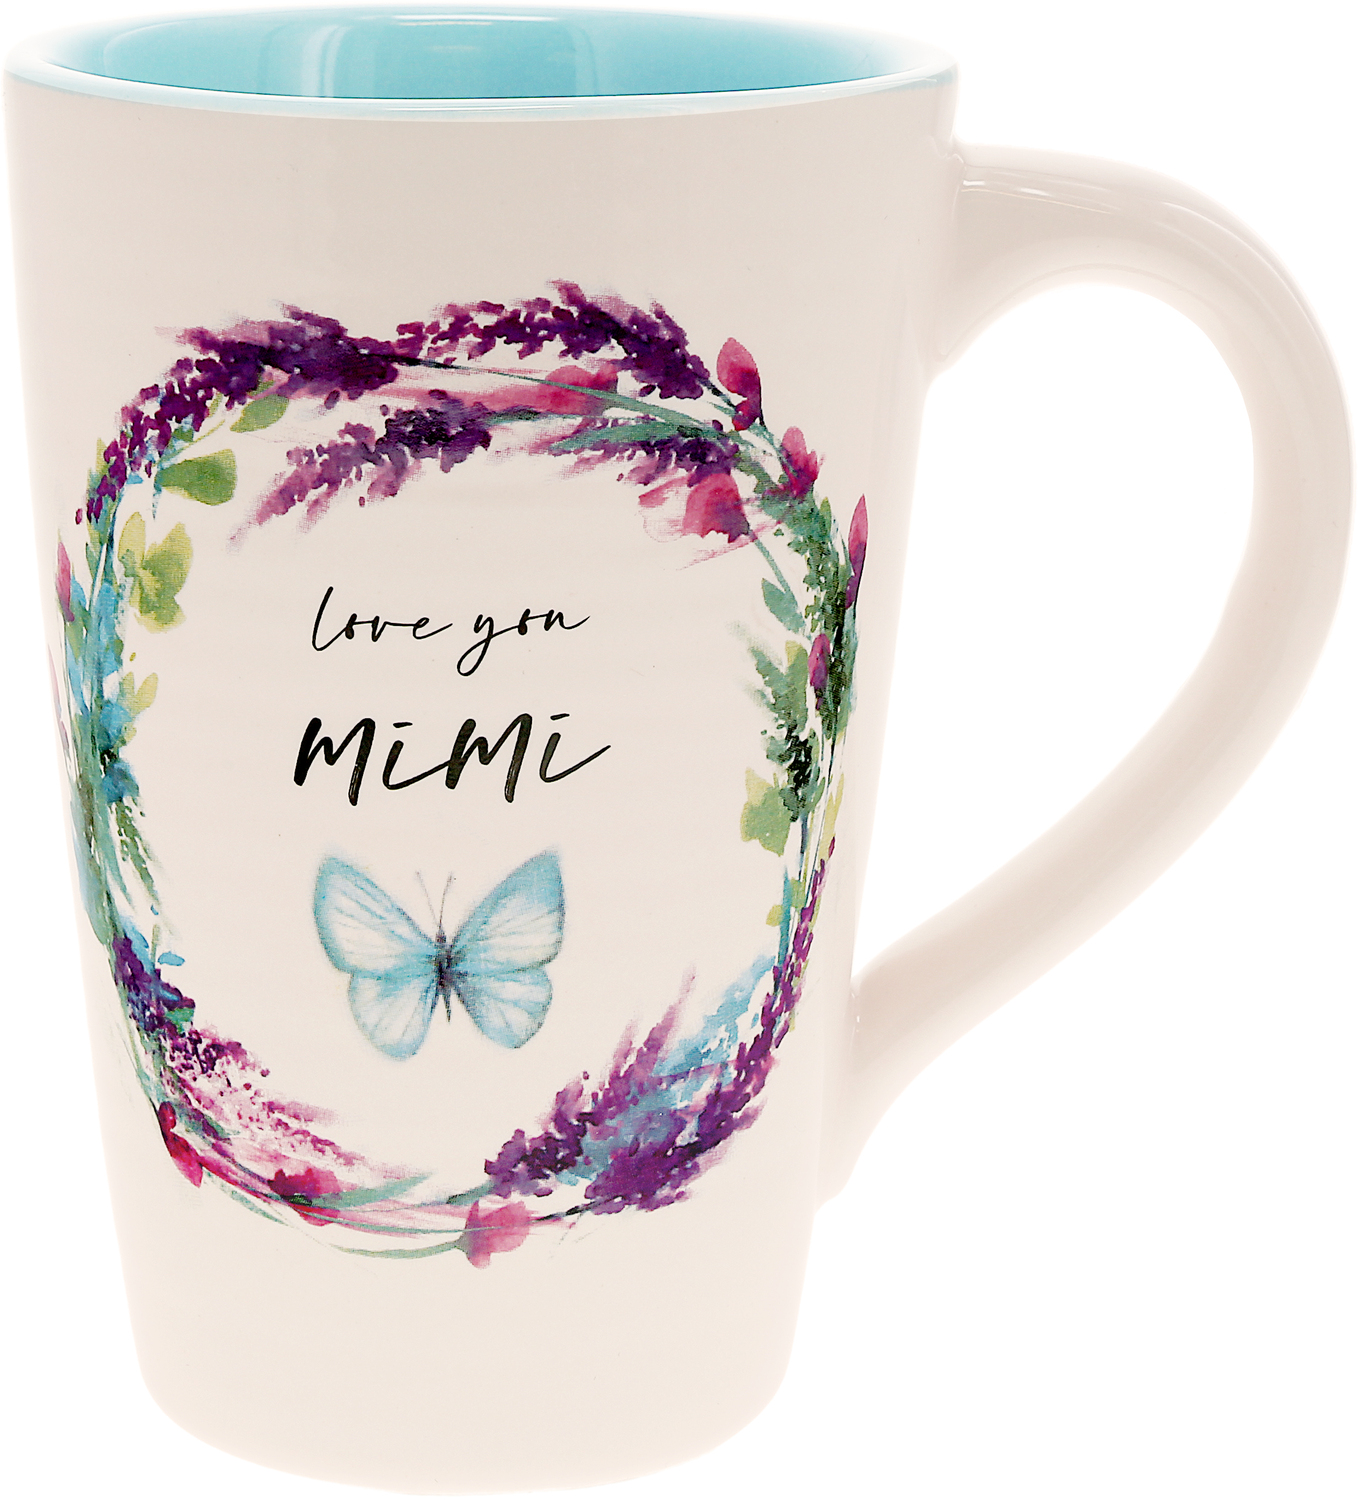 Mimi by Meadows of Joy - Mimi - 17 oz Cup